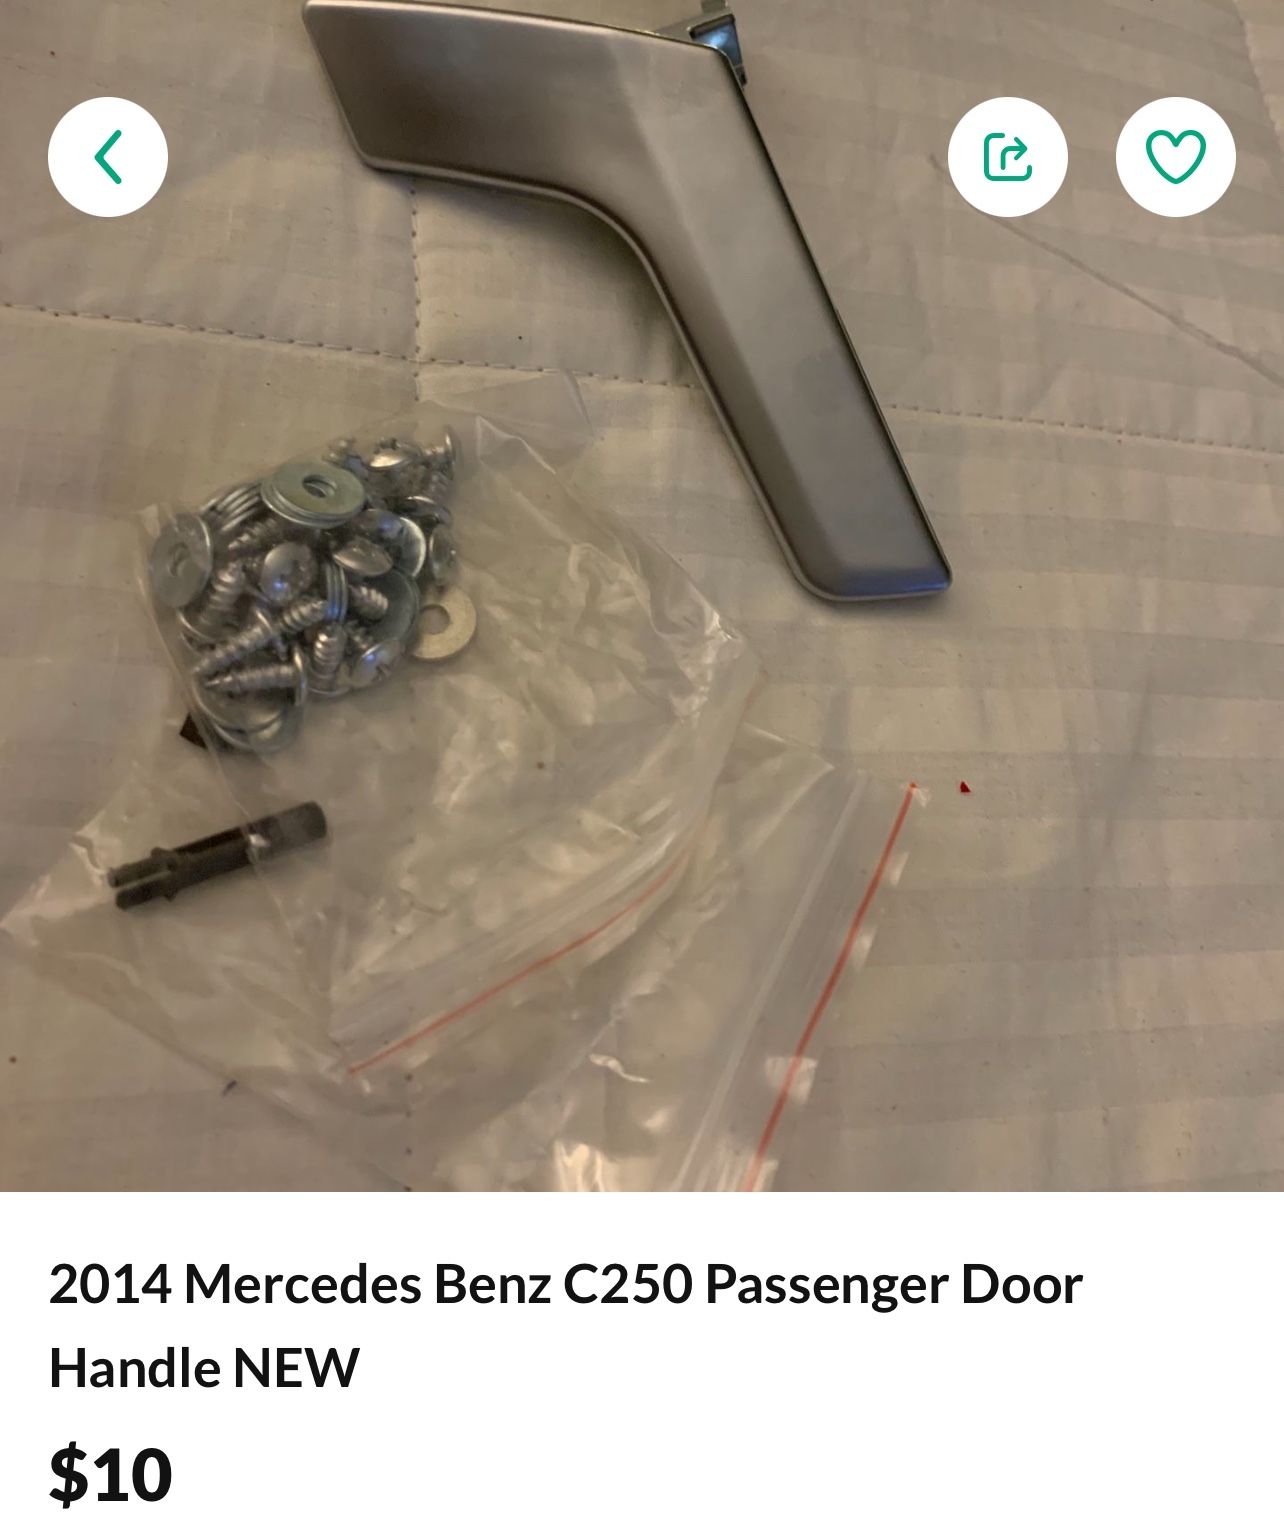 2014 Mercedes Benz C250 Brand New Passenger Door Handle 